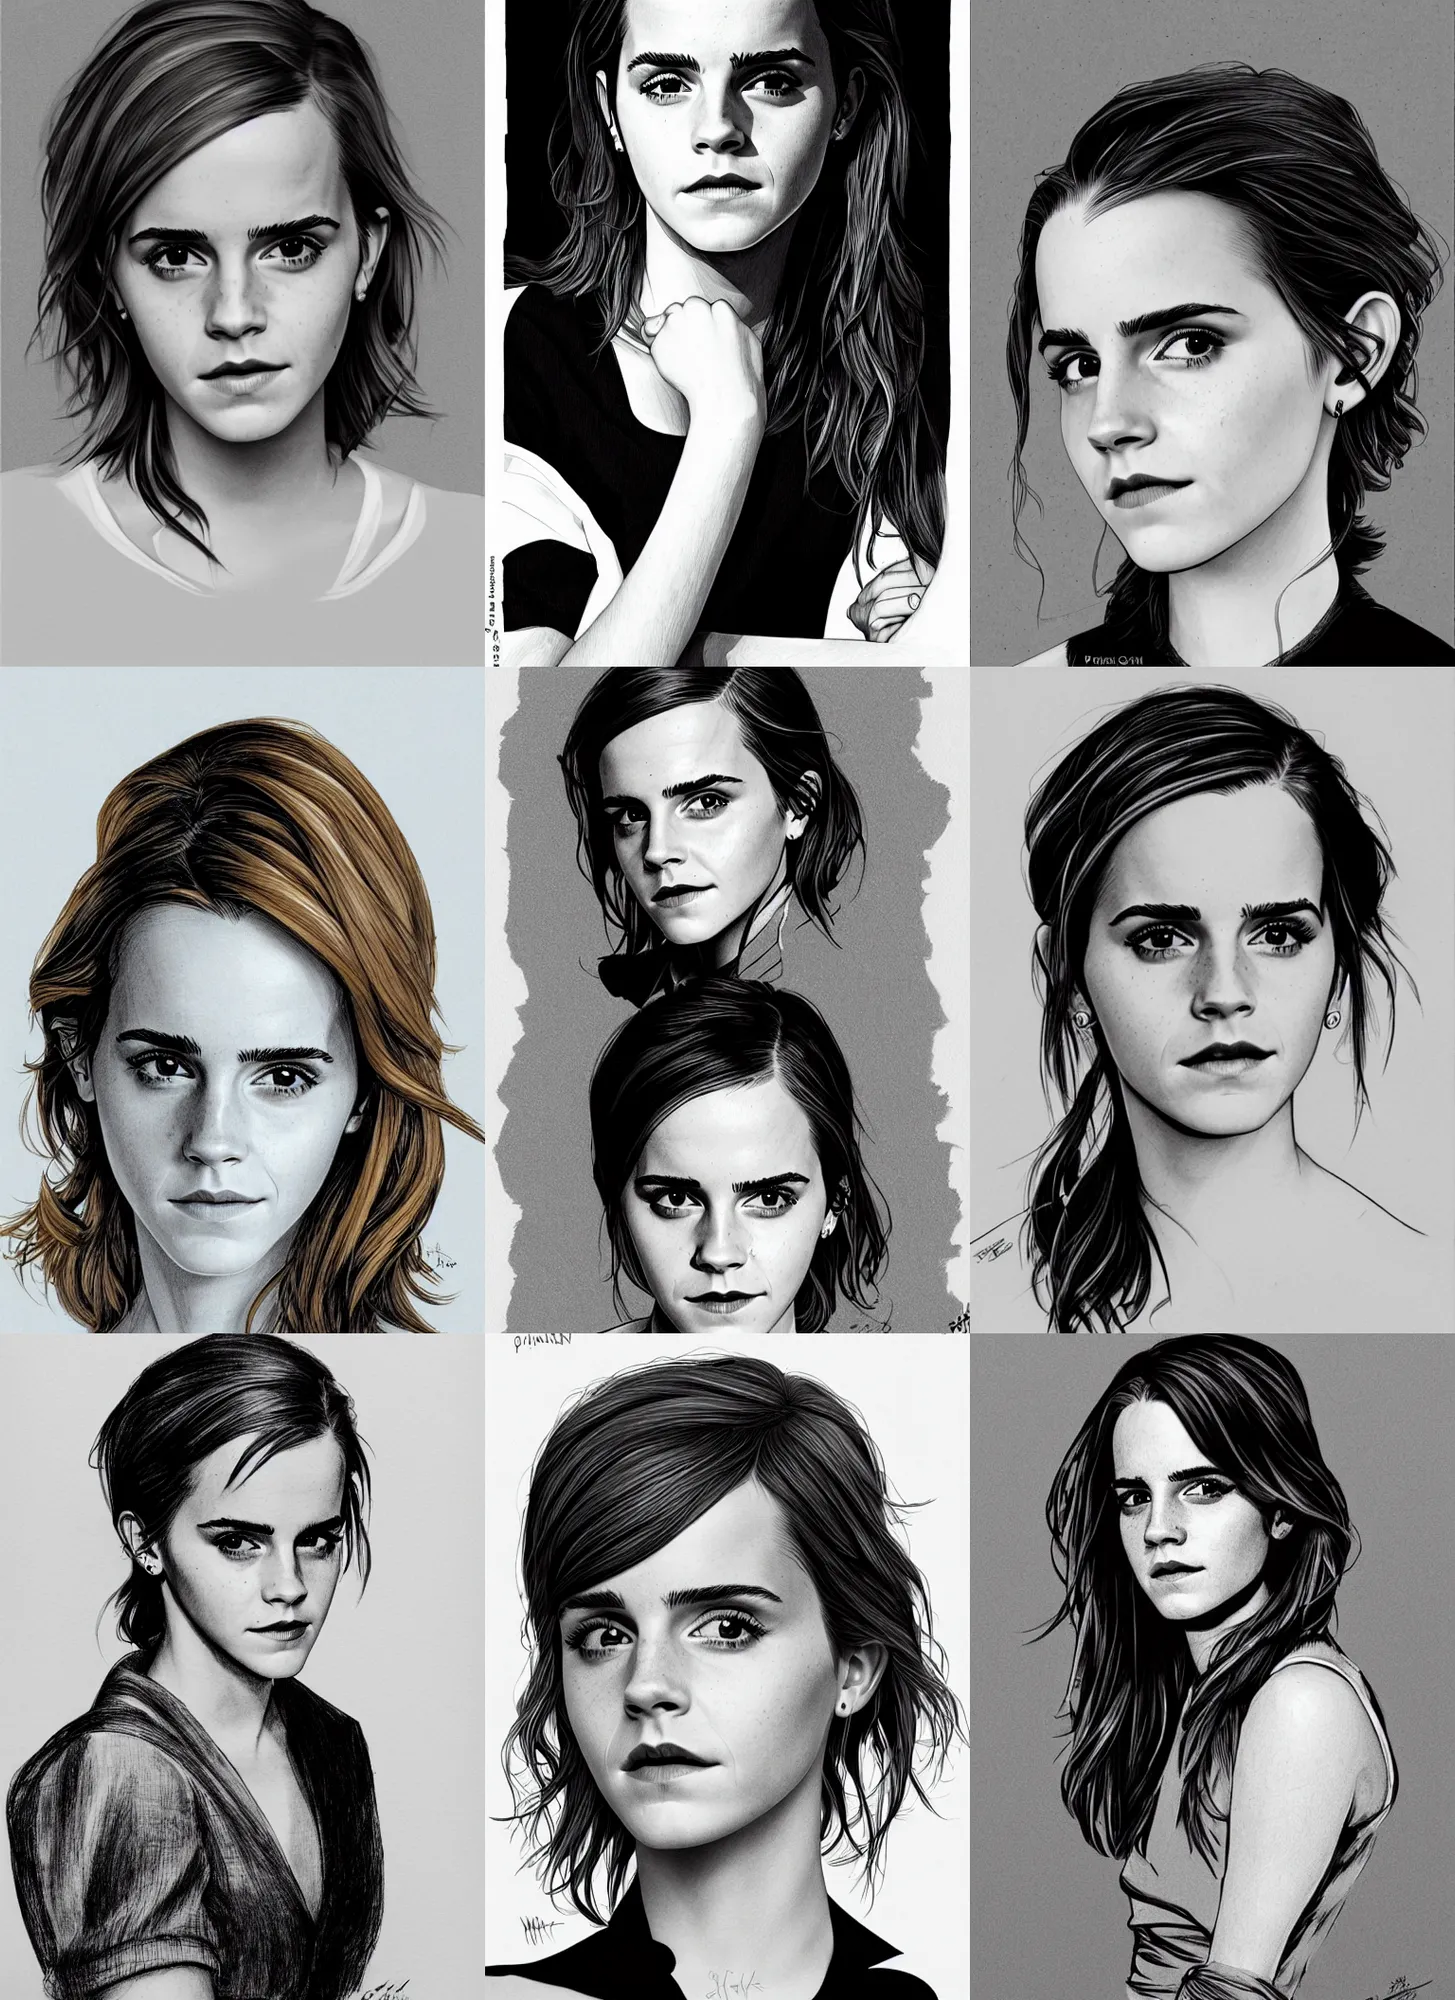 Prompt: Emma Watson, portrait by Patrick Gleason